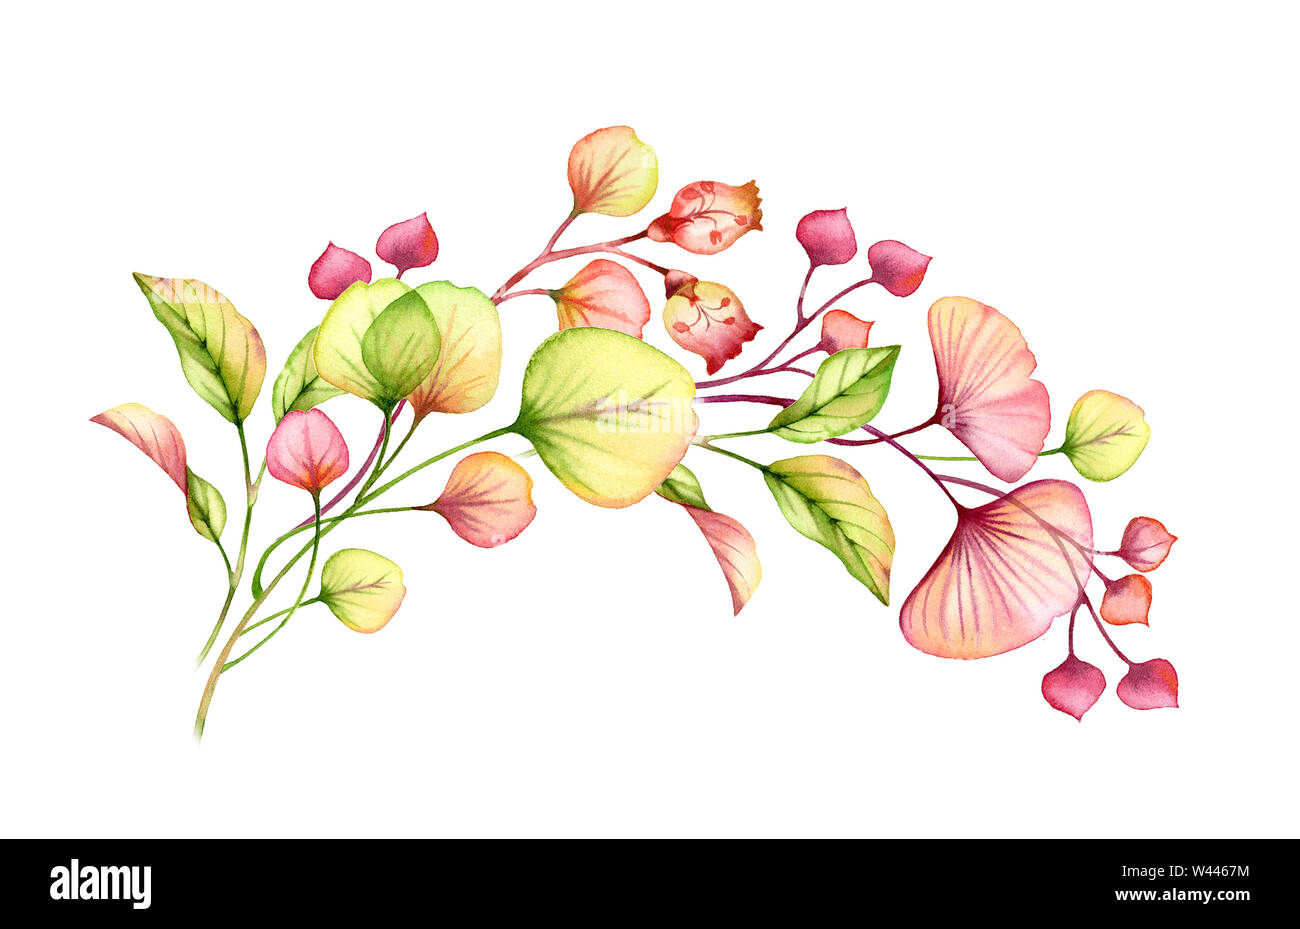 Arrangement floral transparent aquarelle peinte à la main de passage de feuilles, branches en rose pastel, corail rouge orange vert mariage illustration botanique Banque D'Images